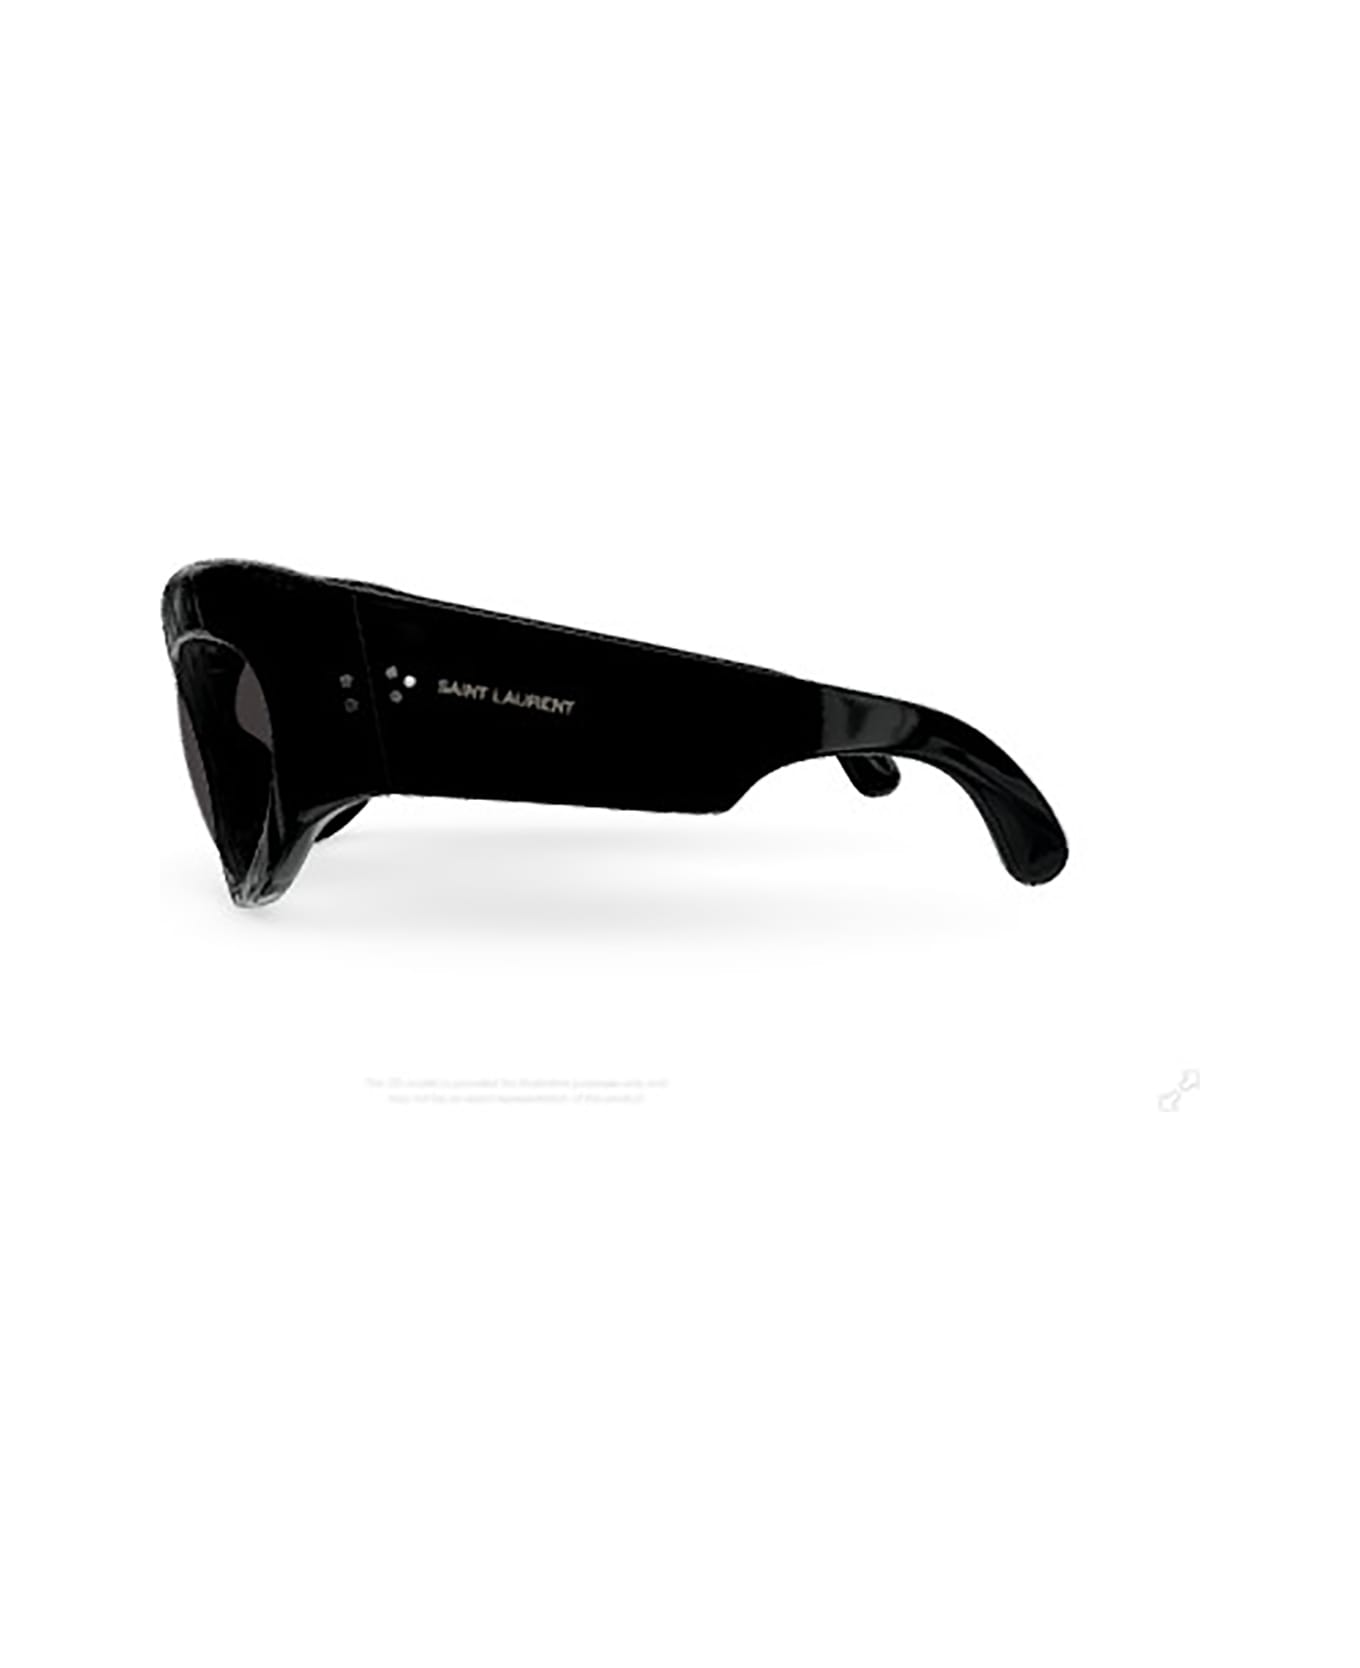 Saint Laurent Eyewear SL 73 Sunglasses - Black Black Black サングラス